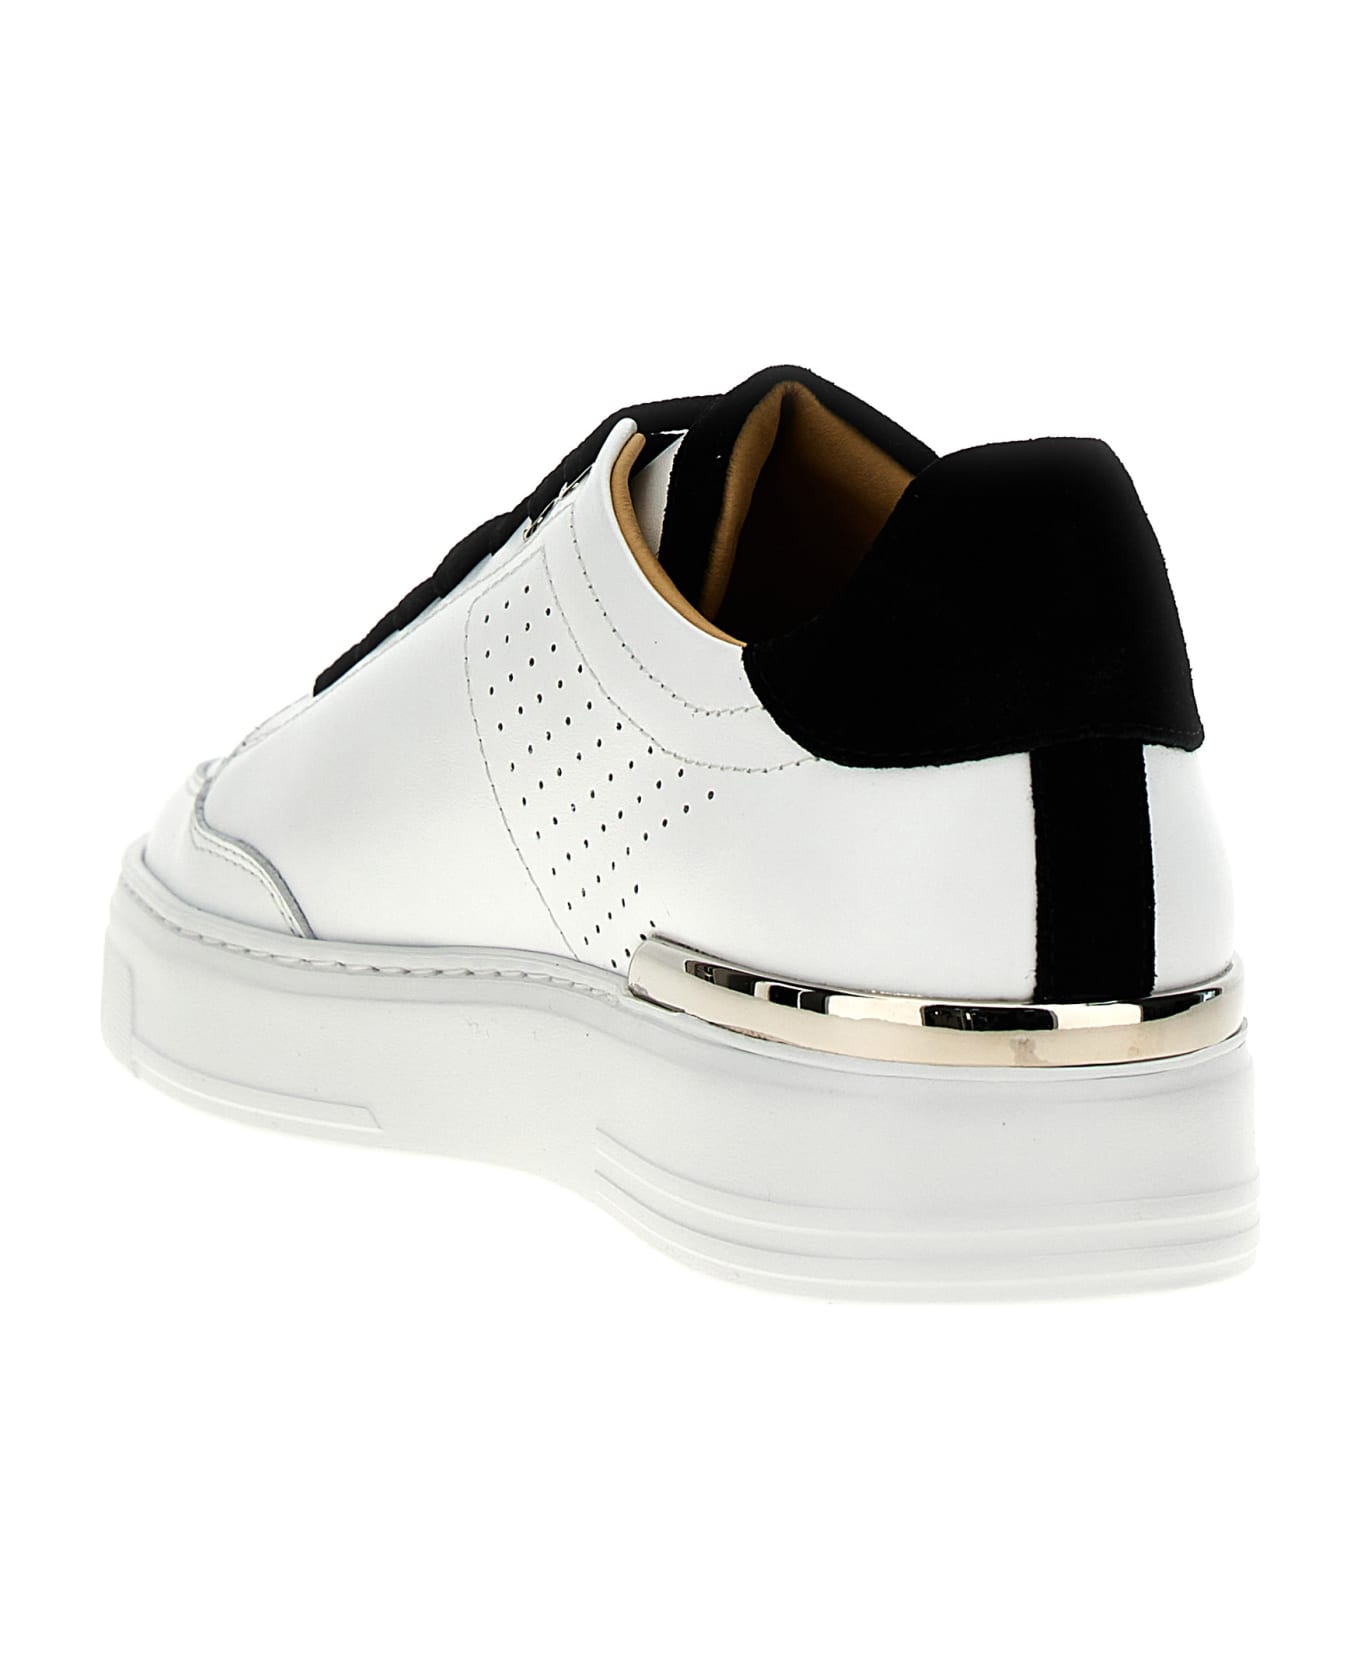 Philipp Plein 'mix Leather Lo-top' Sneakers - White/Black